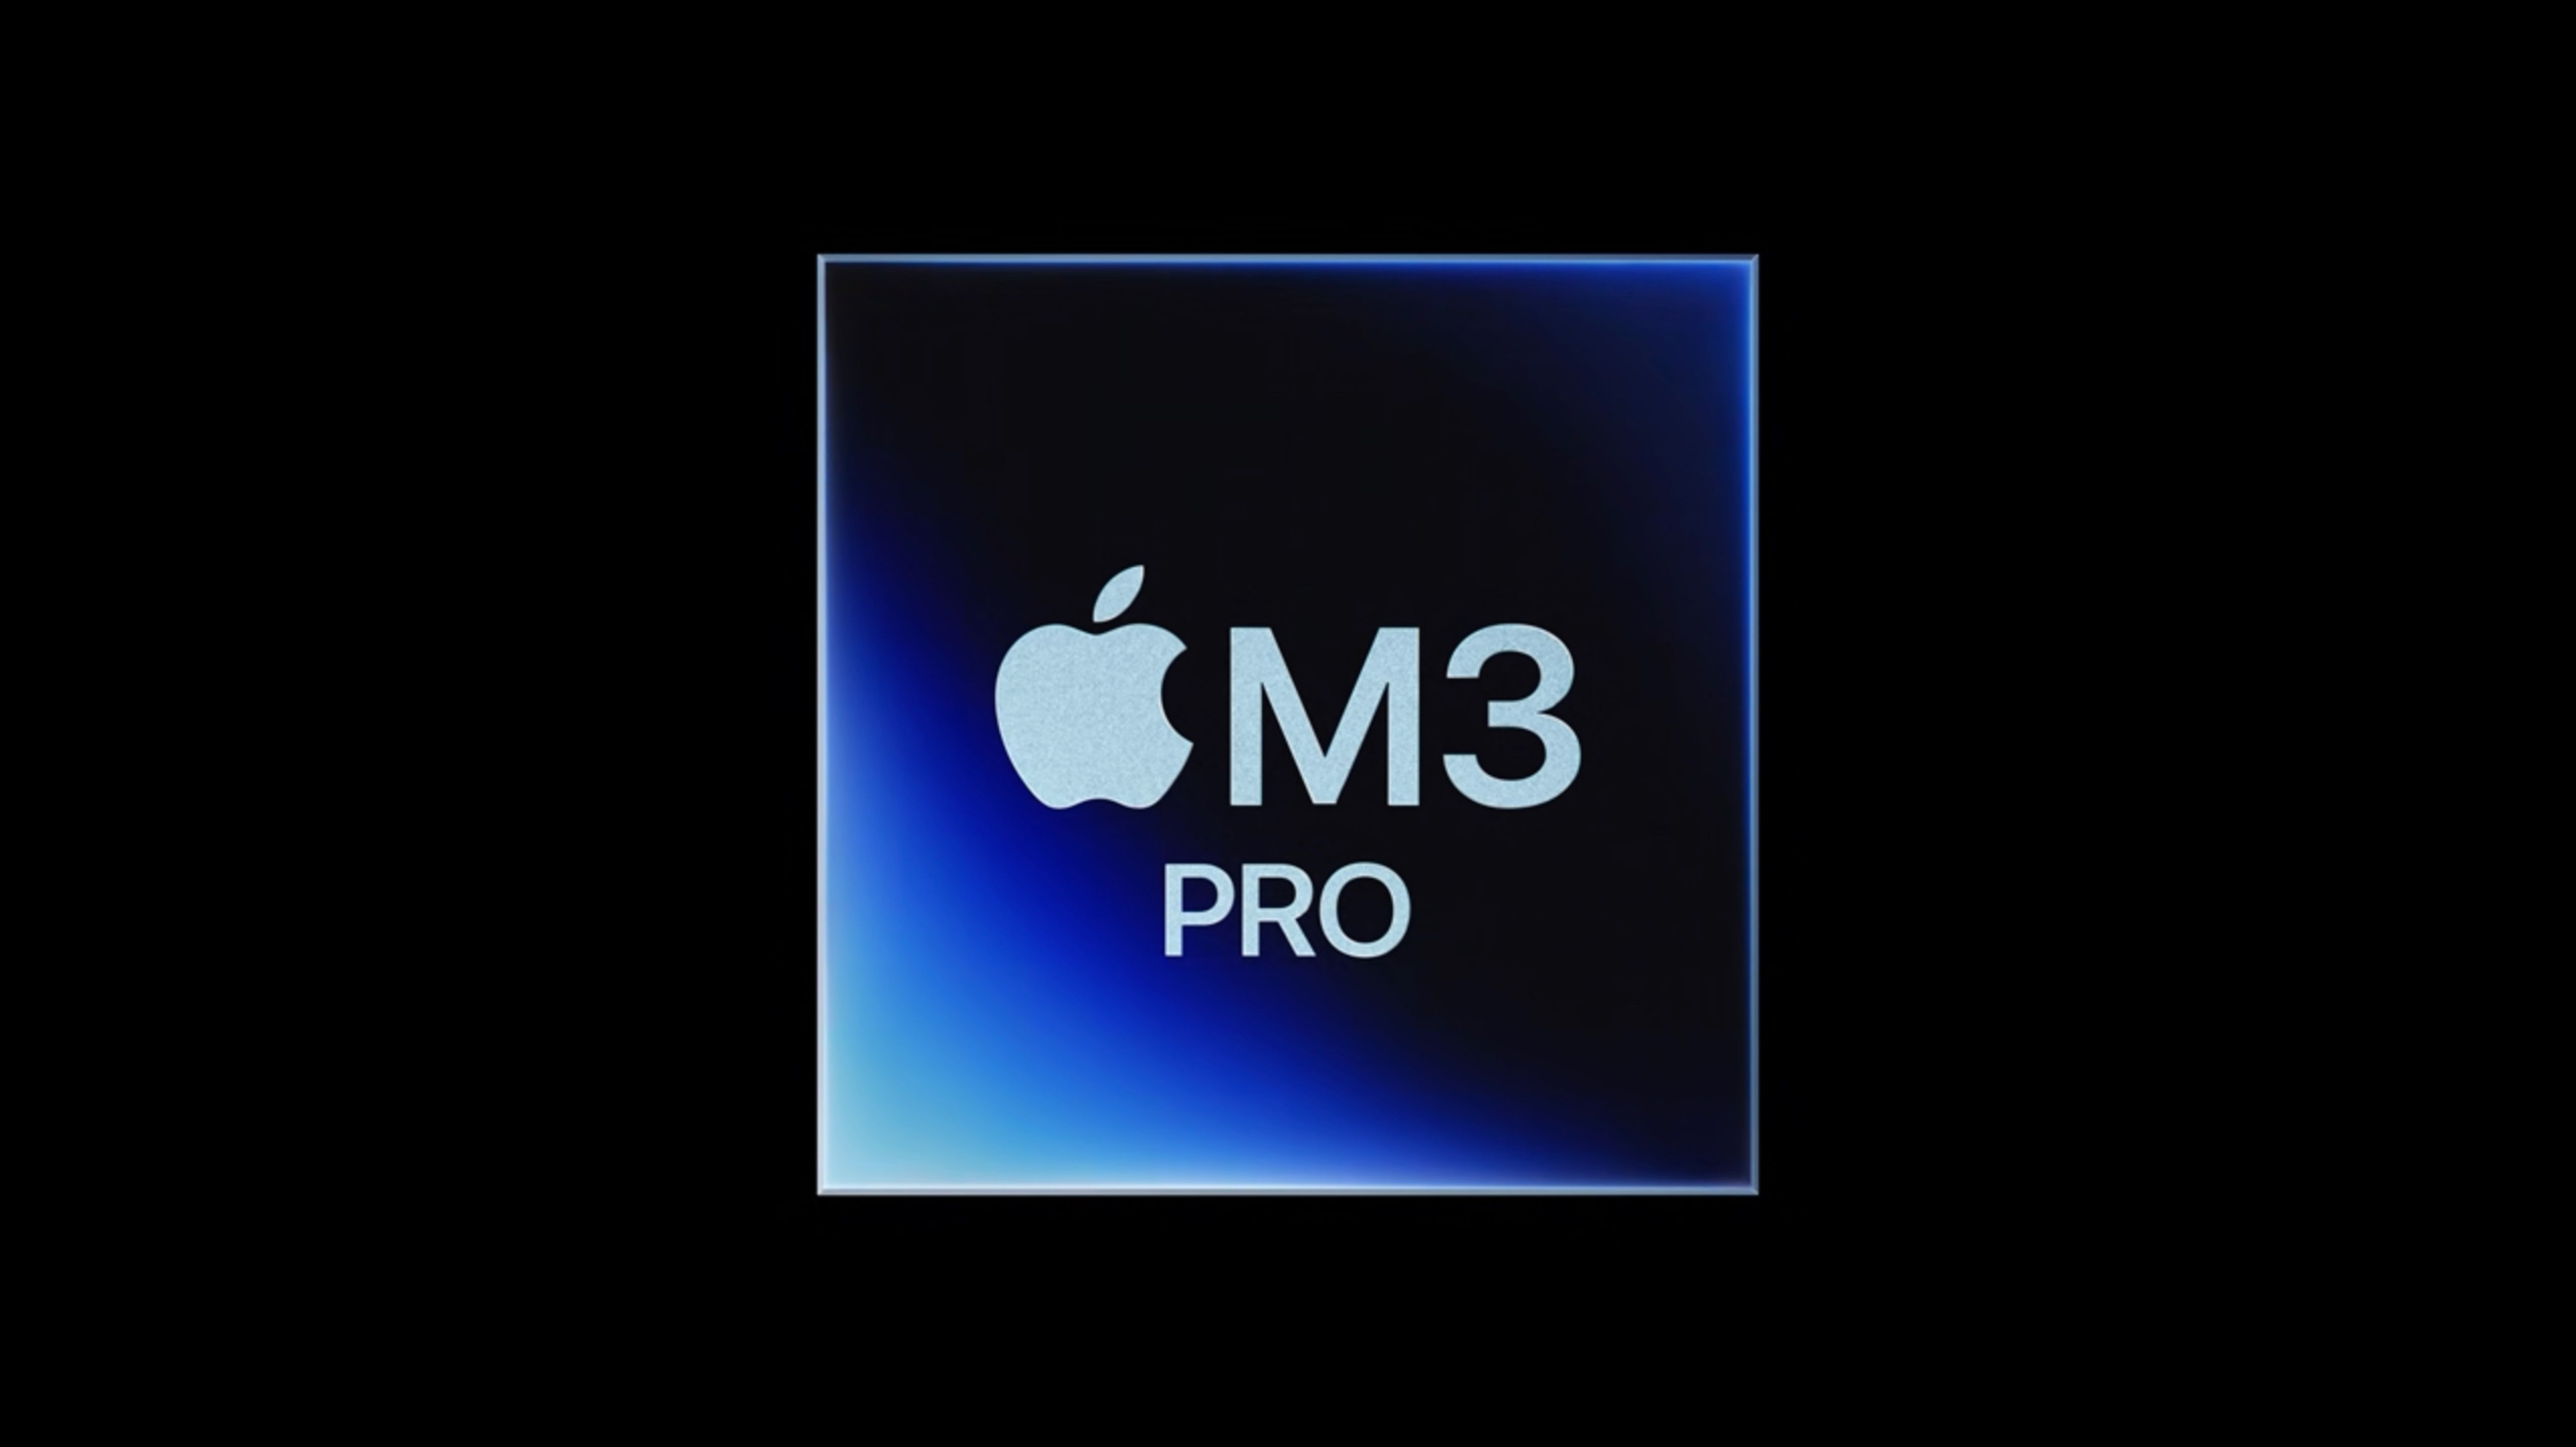 Apple M3 Proチップは、M1/M2 Proよりメモリ帯域幅が25%少ない。